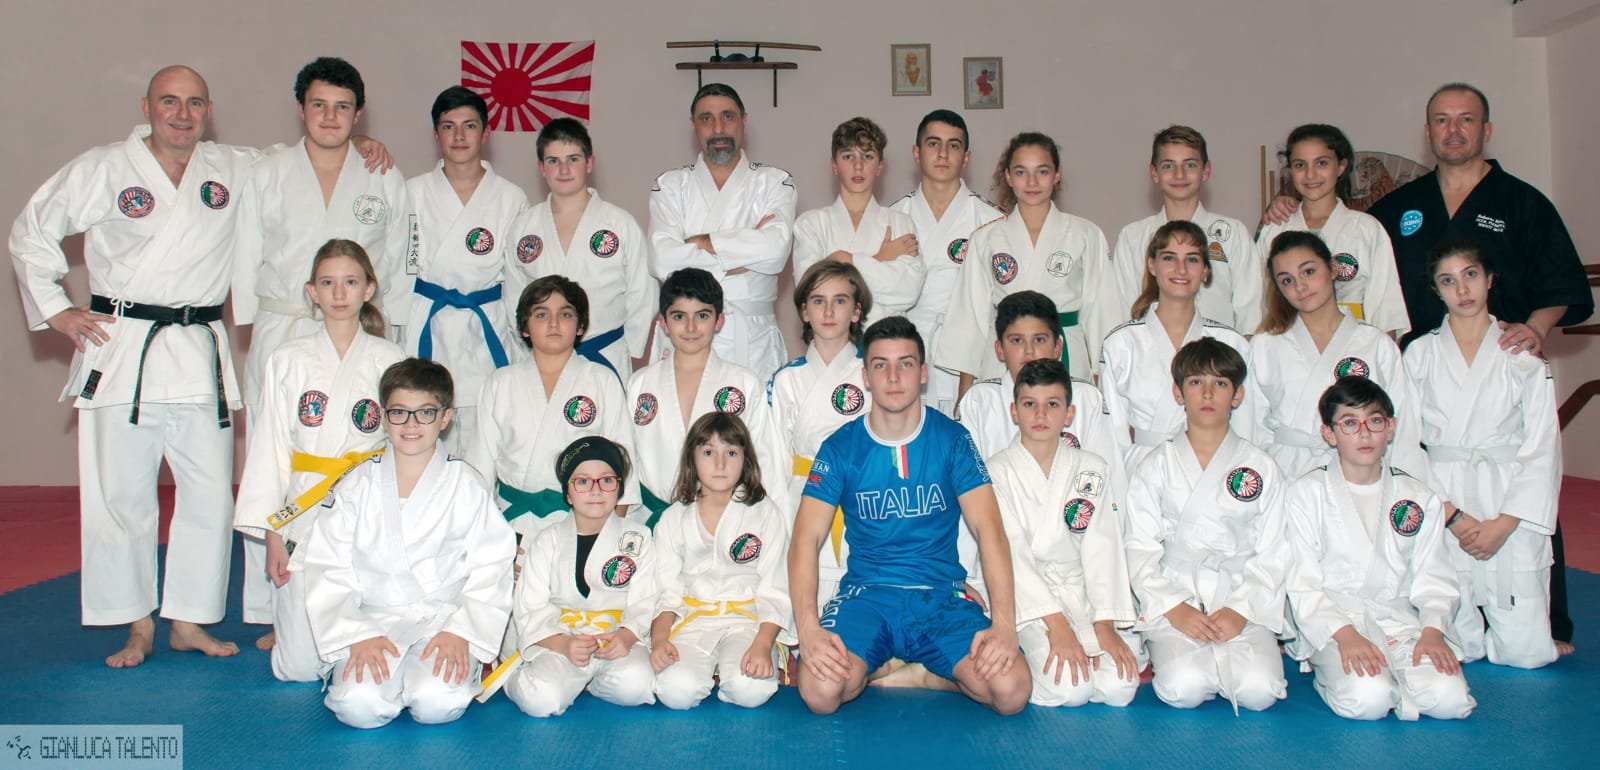 Lezioni di Kick Jitsu alla Saisei di Alessandria con Roberto Mannis